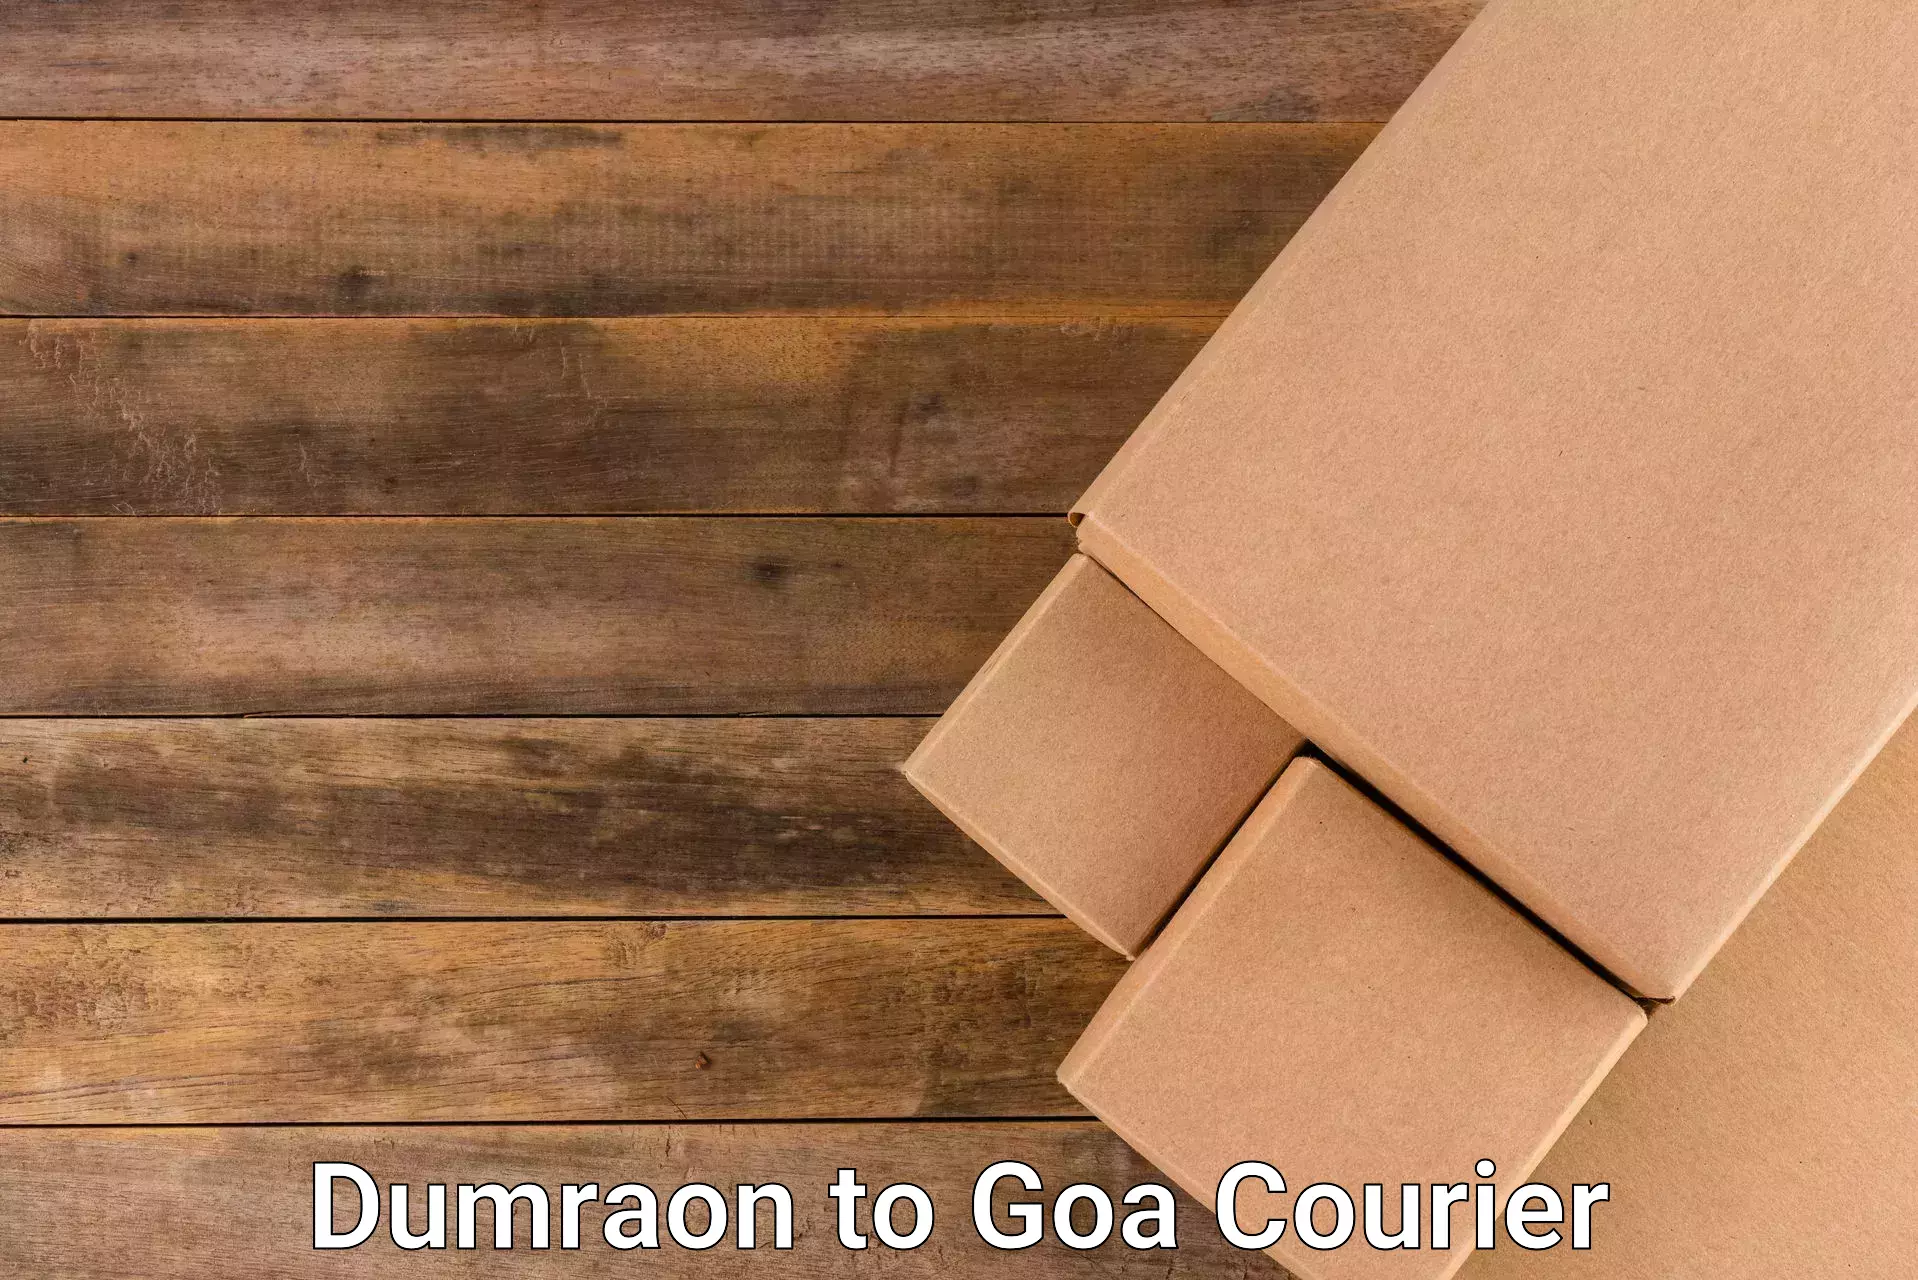 Courier service partnerships Dumraon to Goa University